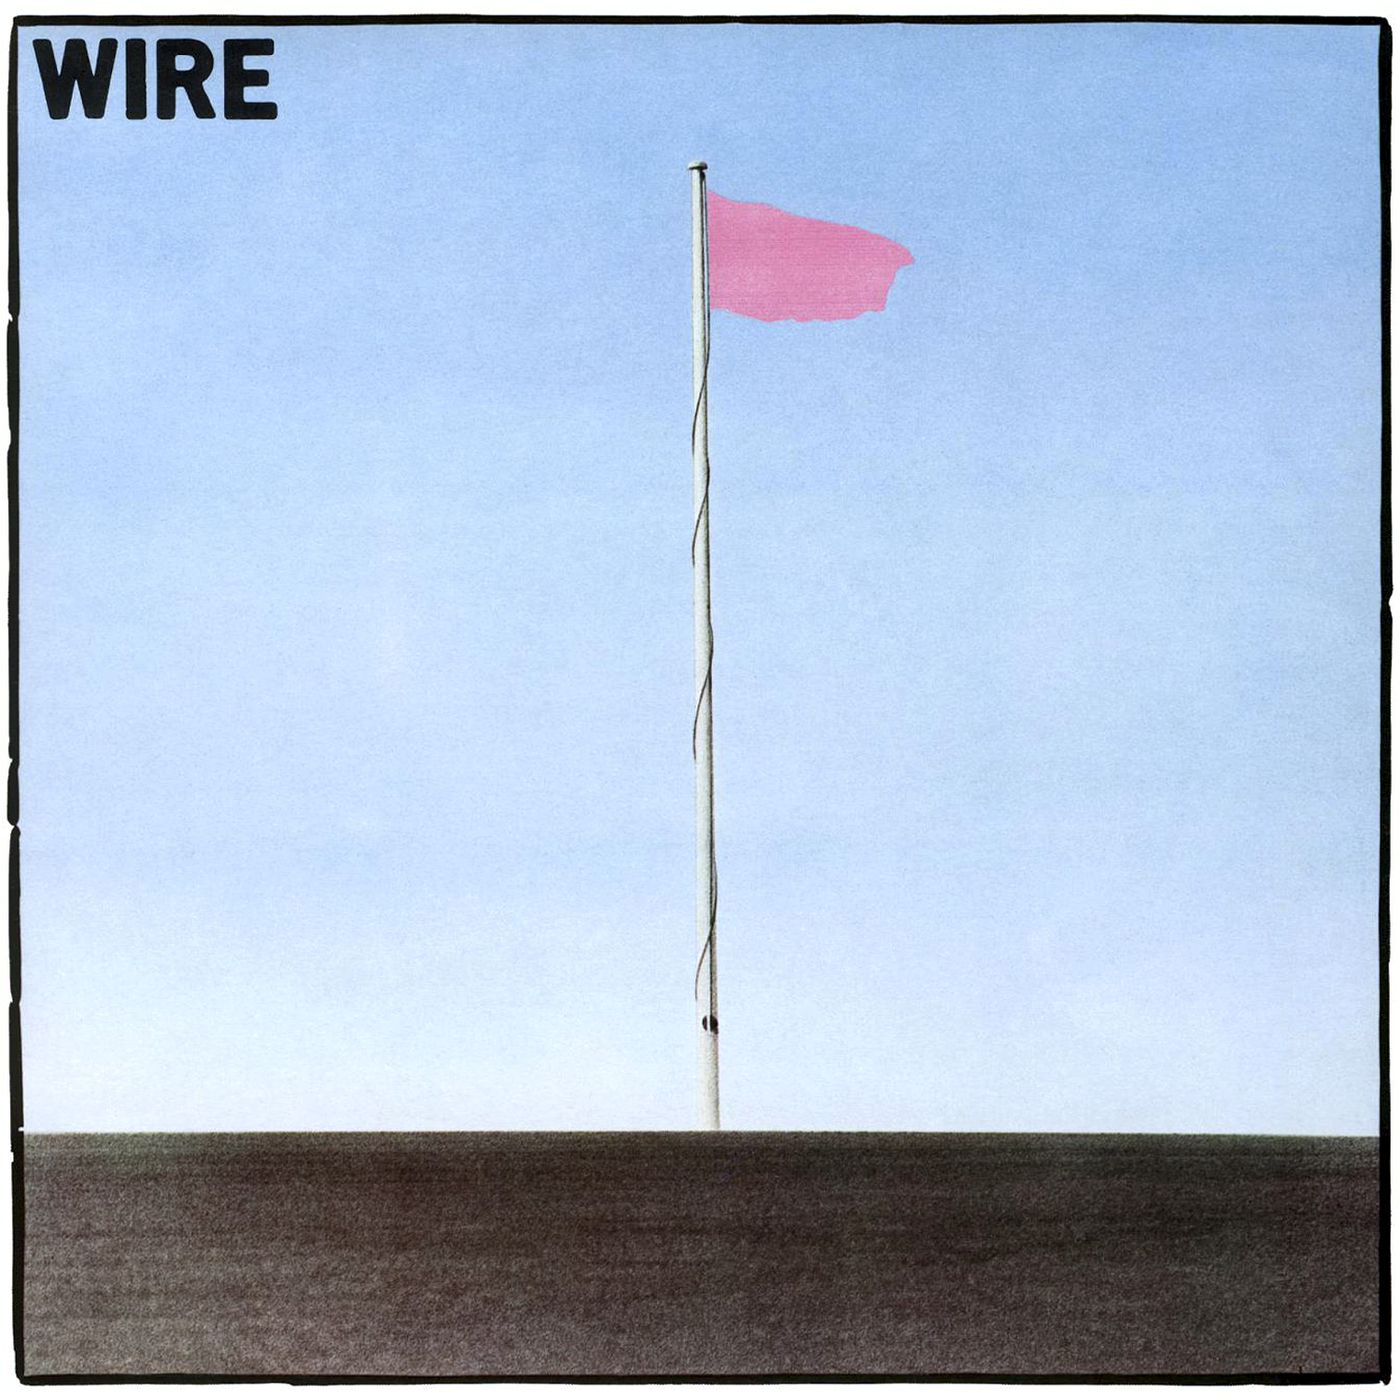 Wire-Pink Flag-16BIT-WEB-FLAC-2006-ENRiCH